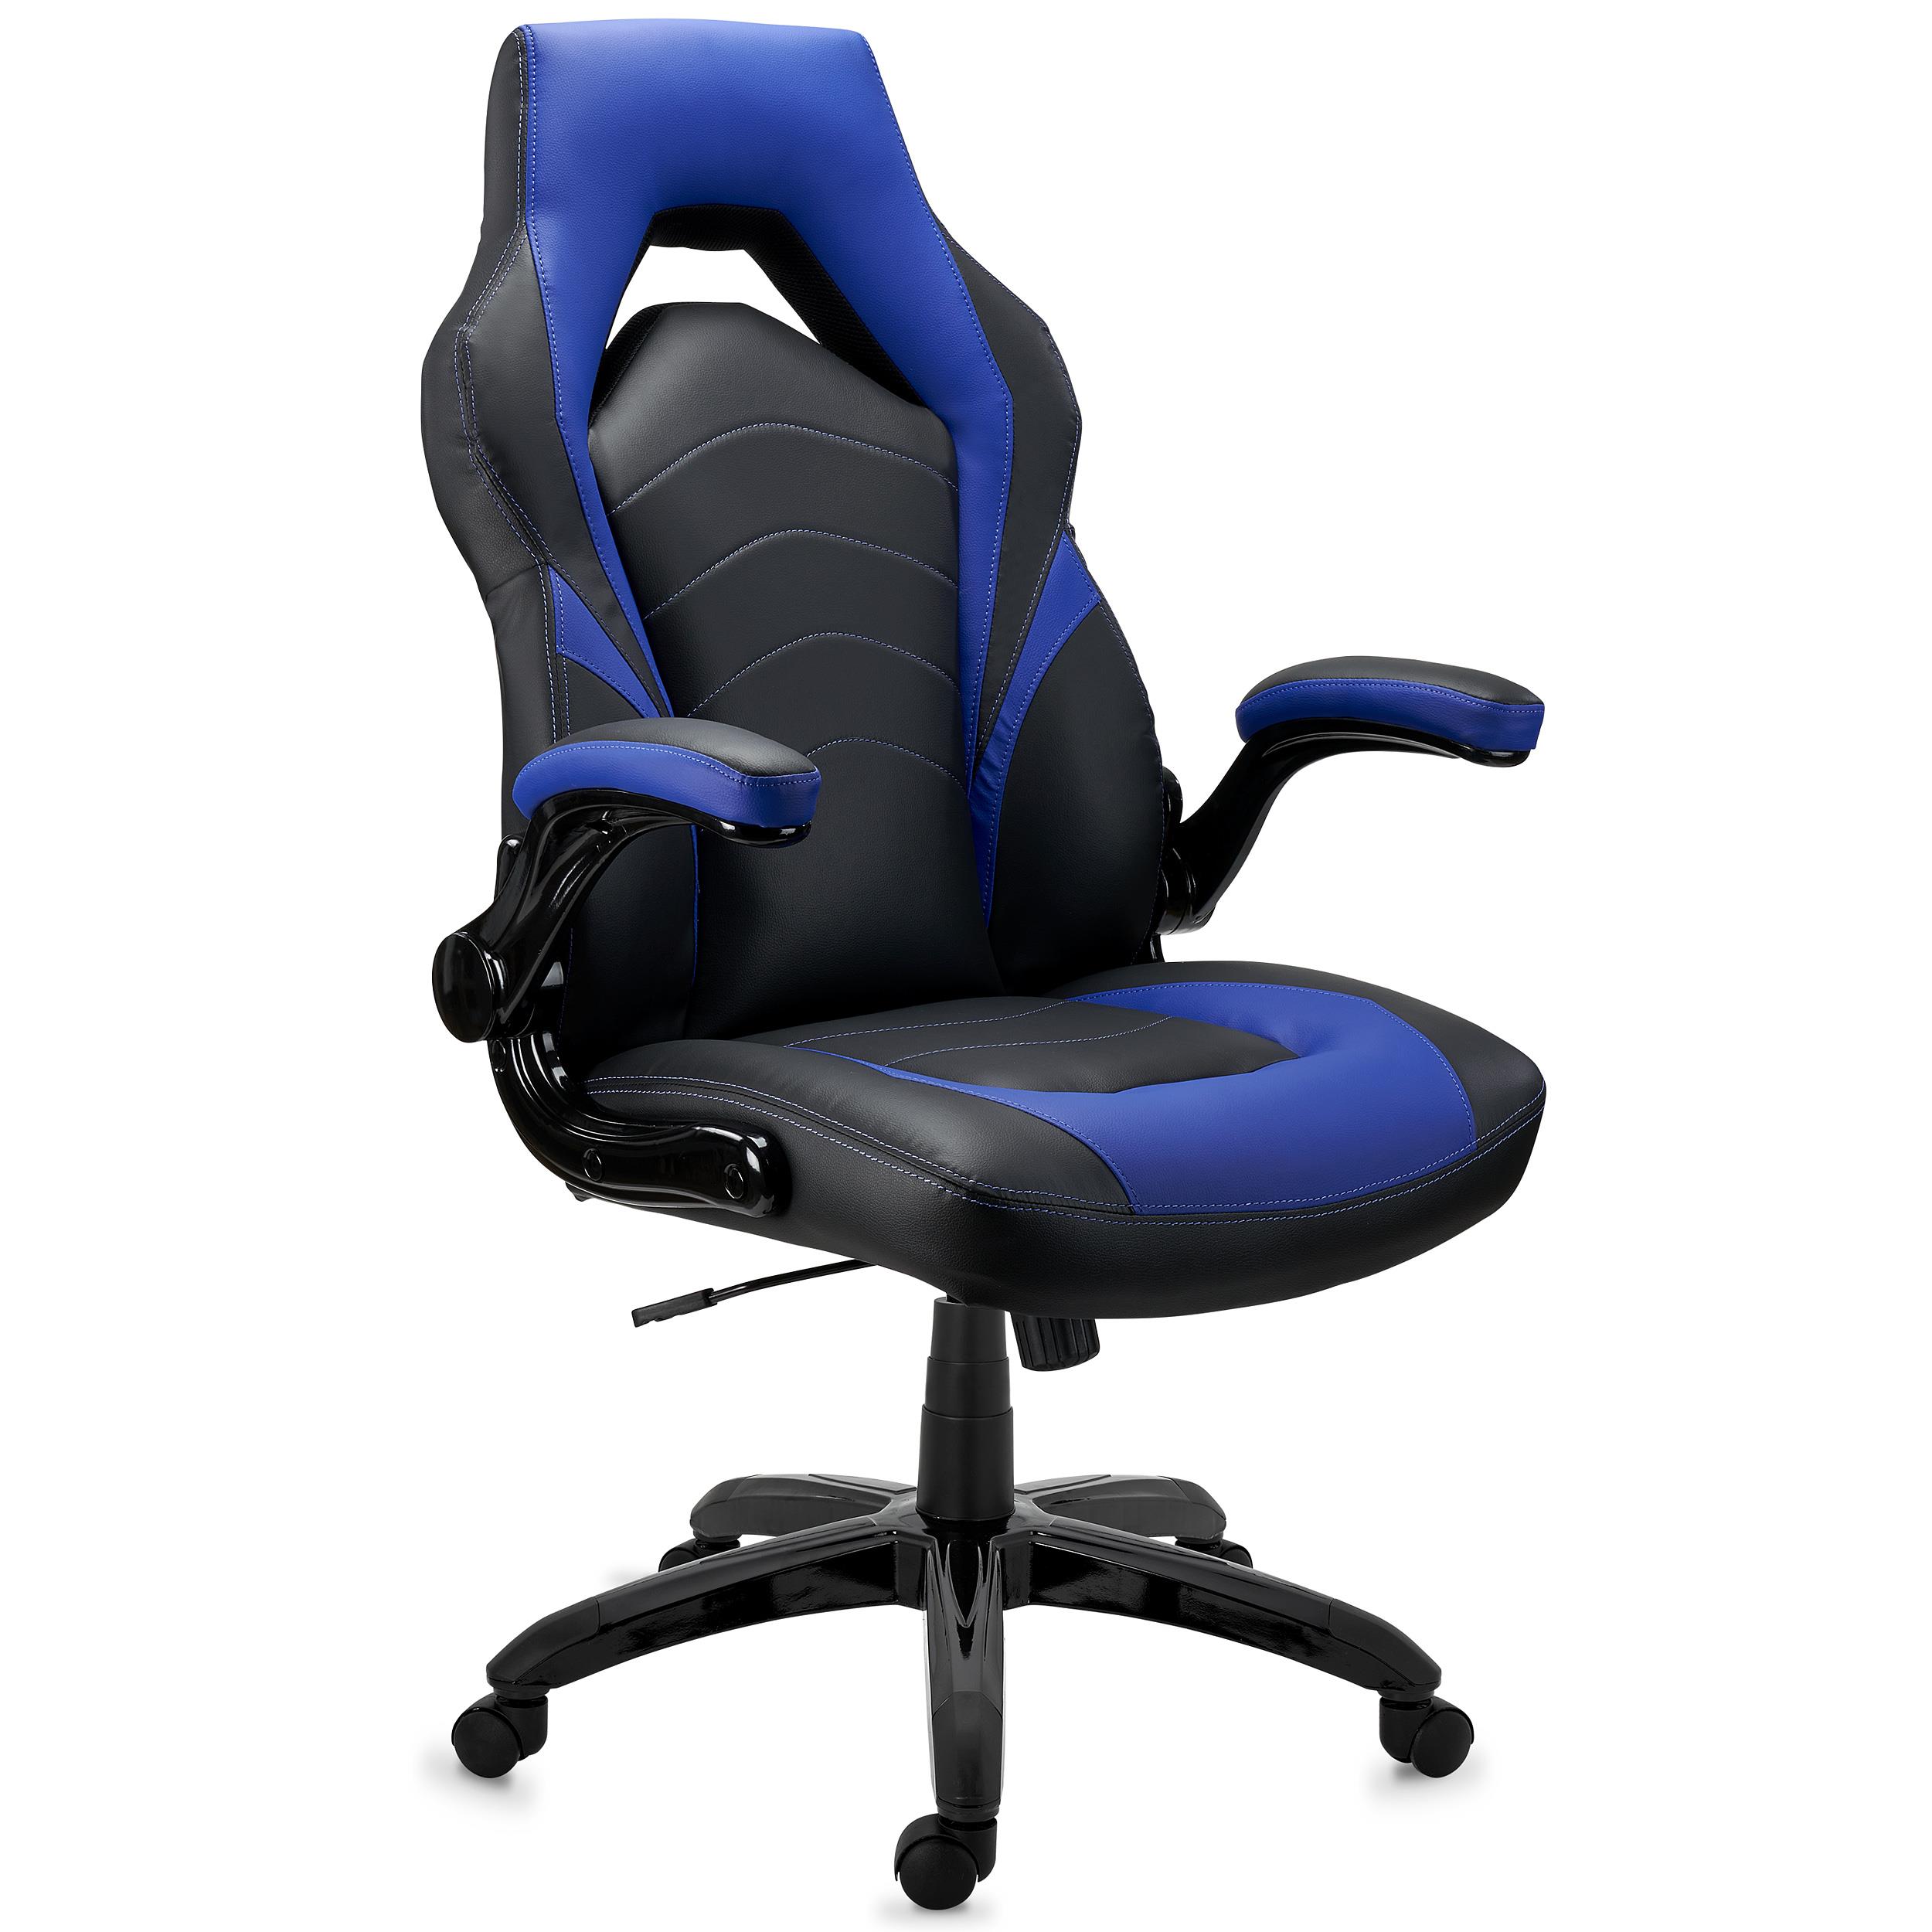 Cadeira Desportiva NITRO, Design Exclusivo, Grosso Acolchoado, Em Pele, Cor Preto e Azul